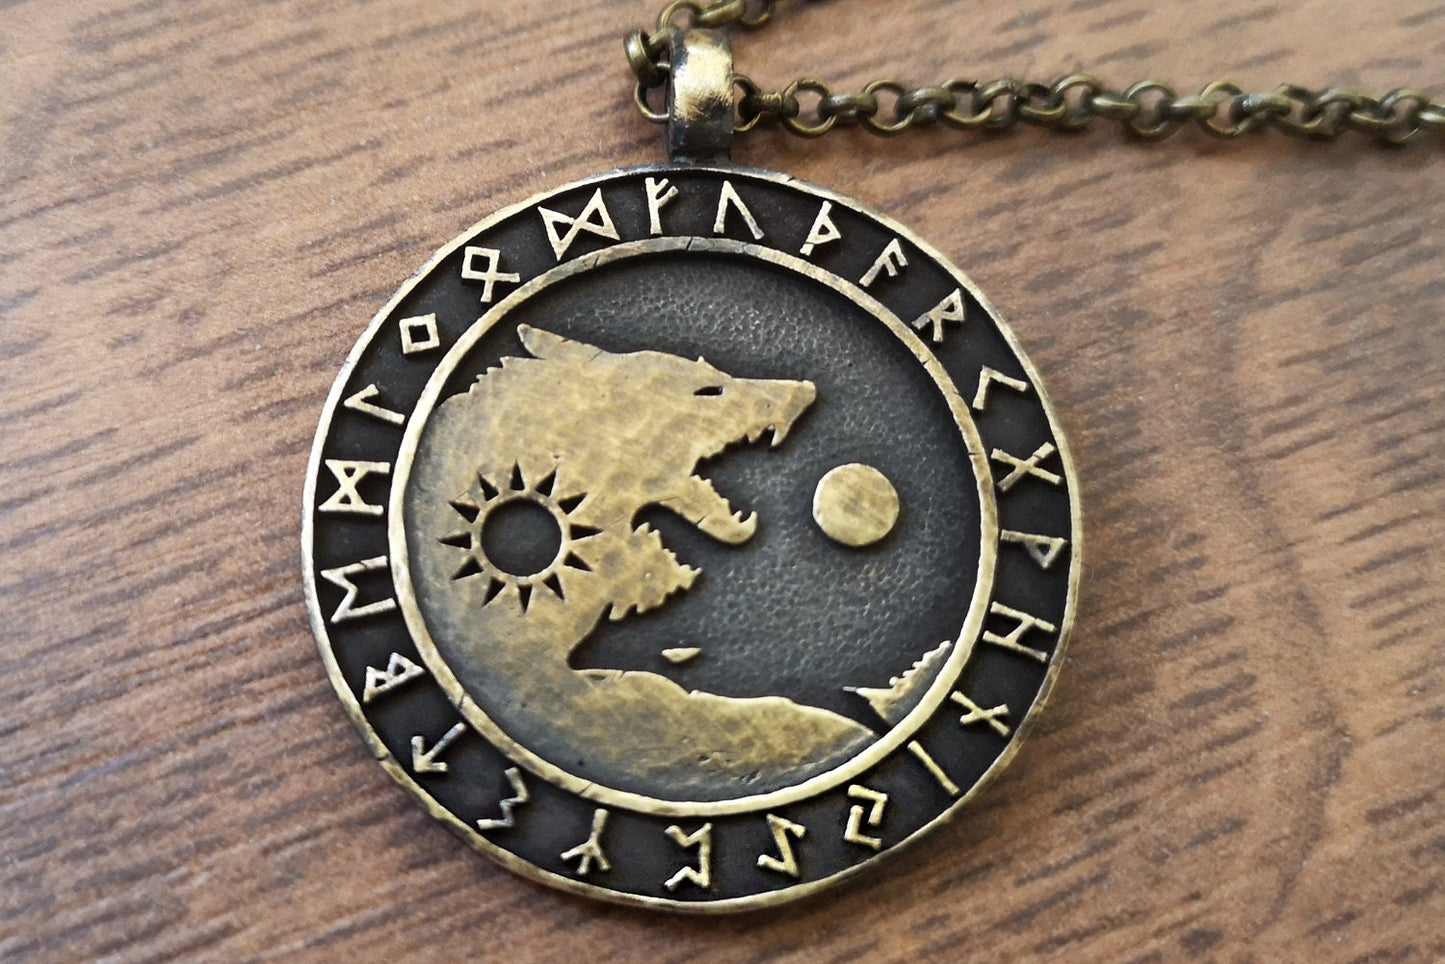 Keltisch und Wikingisch inspirierte Halskette mit Wölfen Skoll Hati, die Sonne und Mond jagen - Balance im Leben, Freundschaftsanhänger für beste Freunde